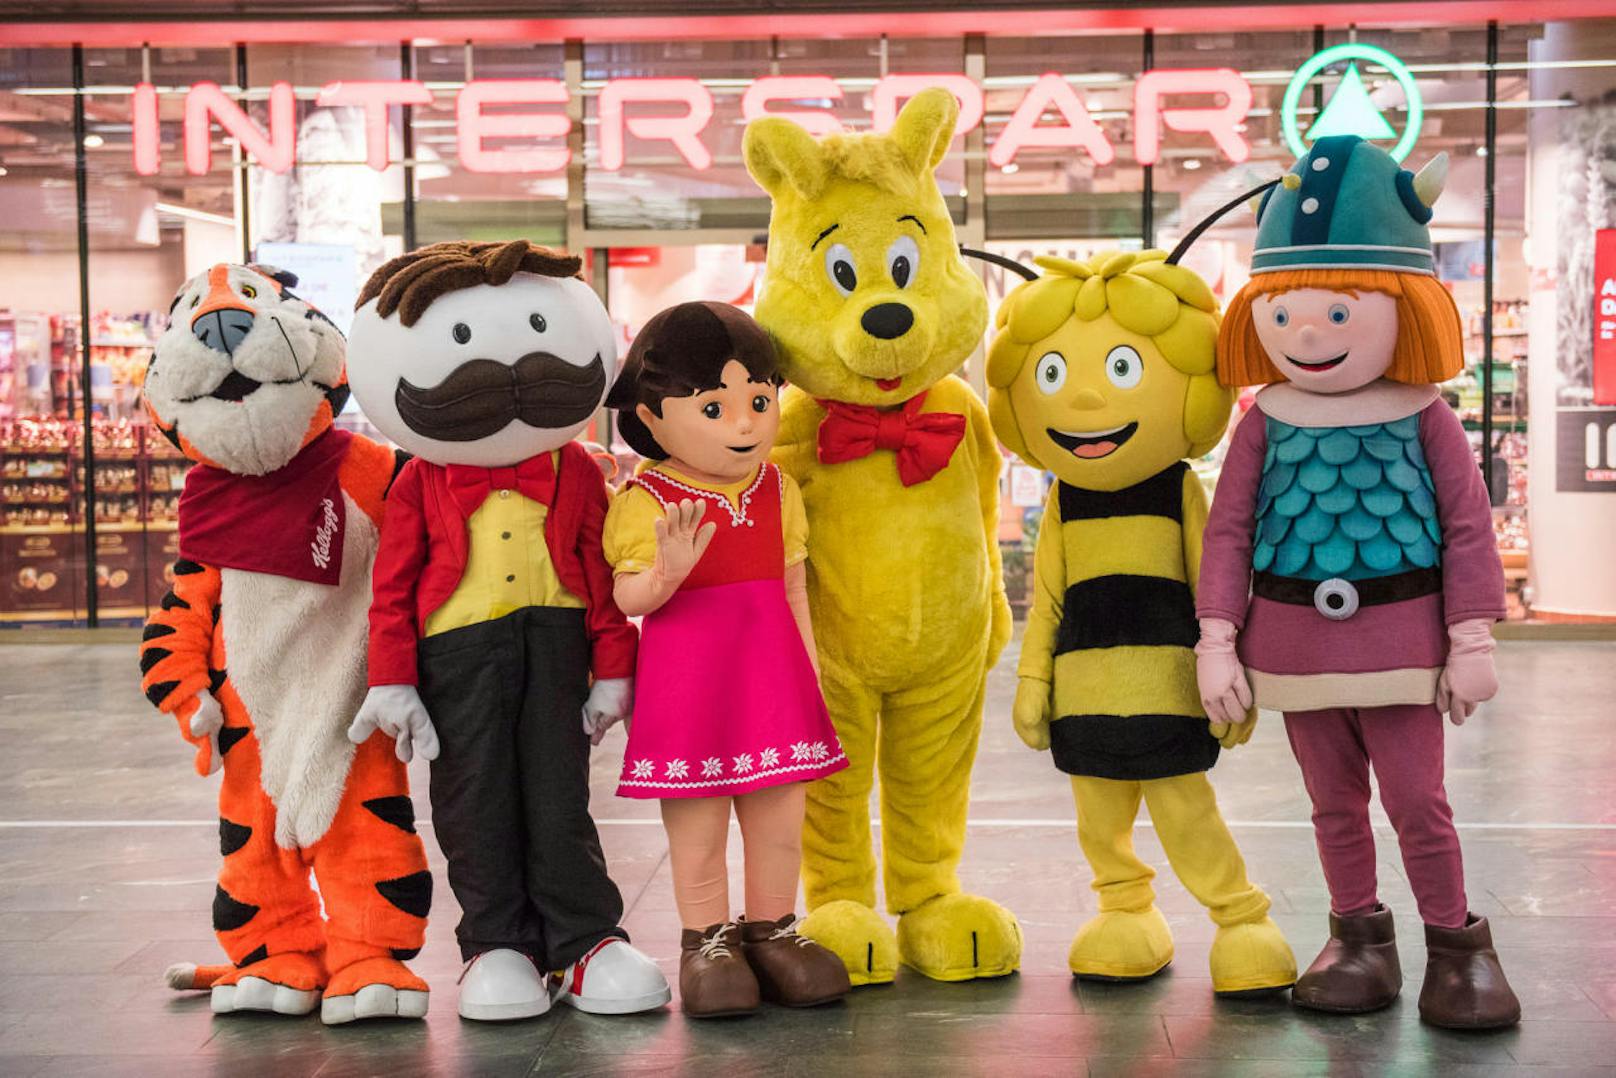 Am Freitag findet das Welttreffen der Maskottchen in der BahnhofCity Wien Hauptbahnhof statt. Benjamin Blümchen, Biene Maja, Wickie, Super Mario sind dabei!